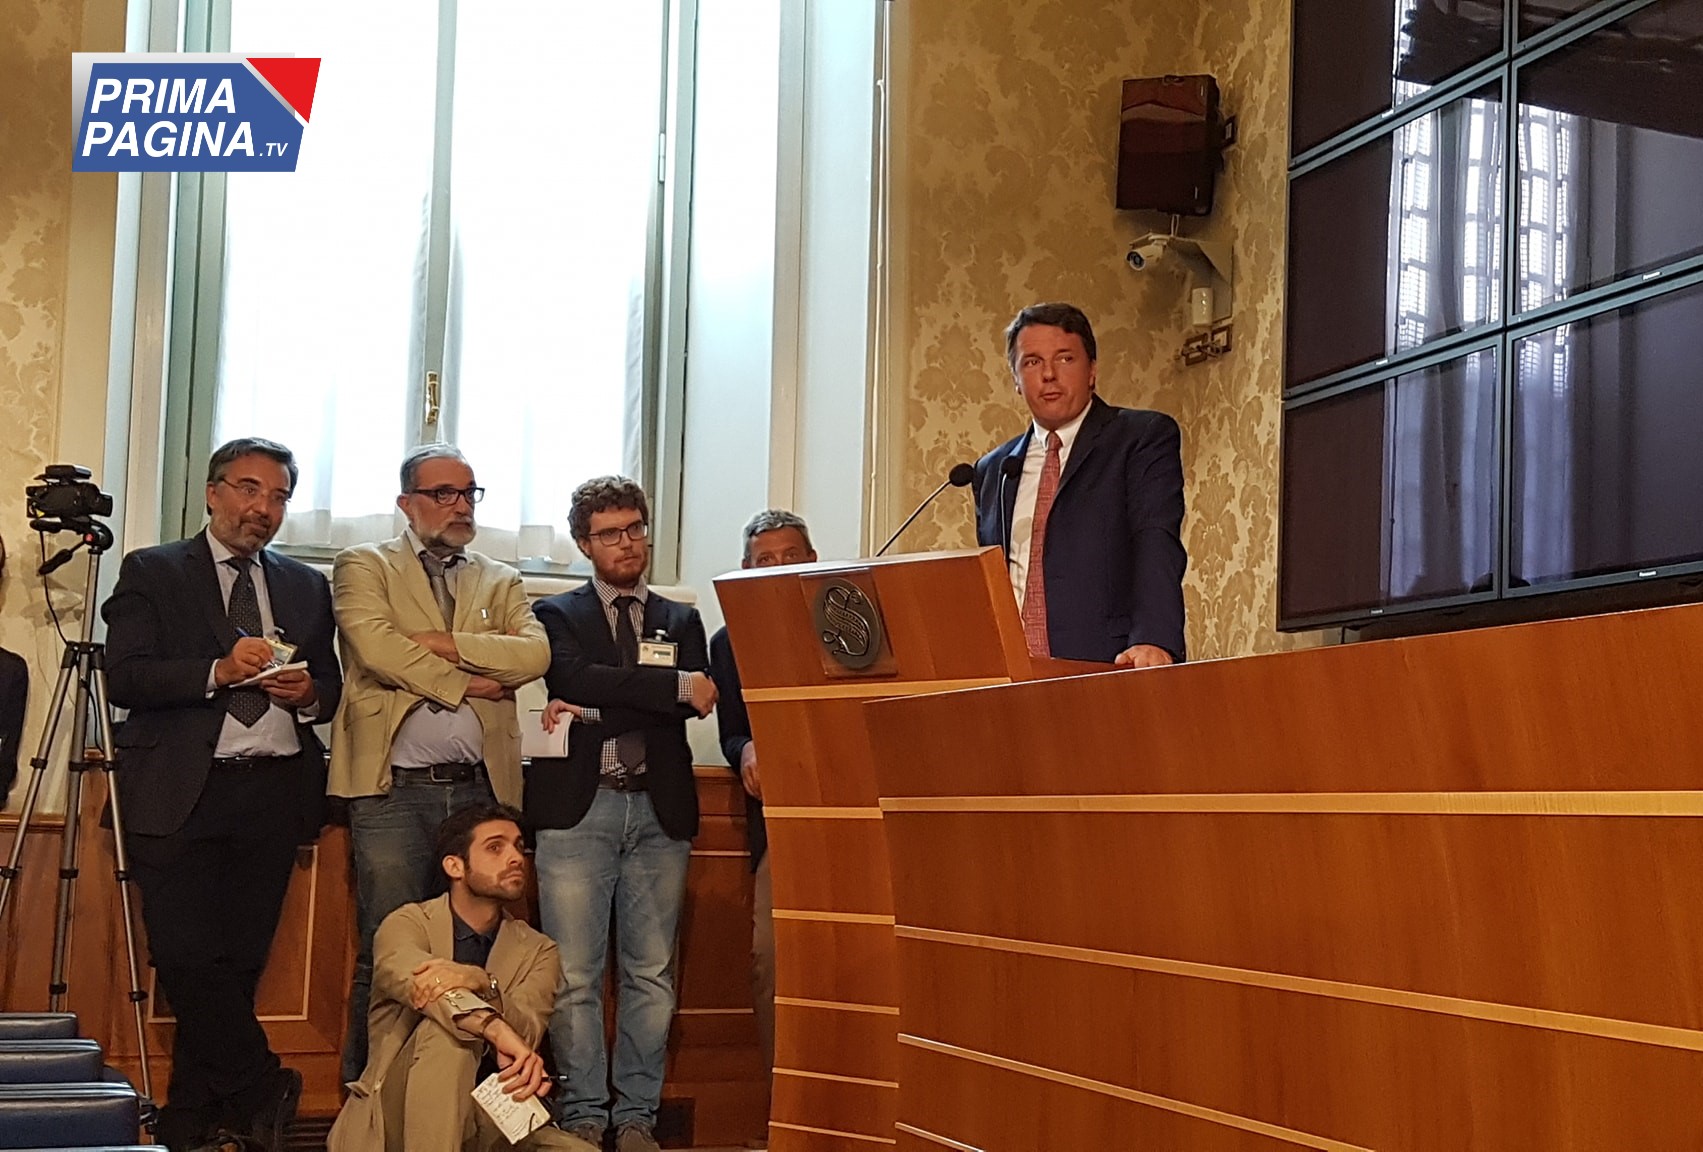 GIOVANI: Oggi Matteo Renzi apre l'iniziativa di Italia Viva